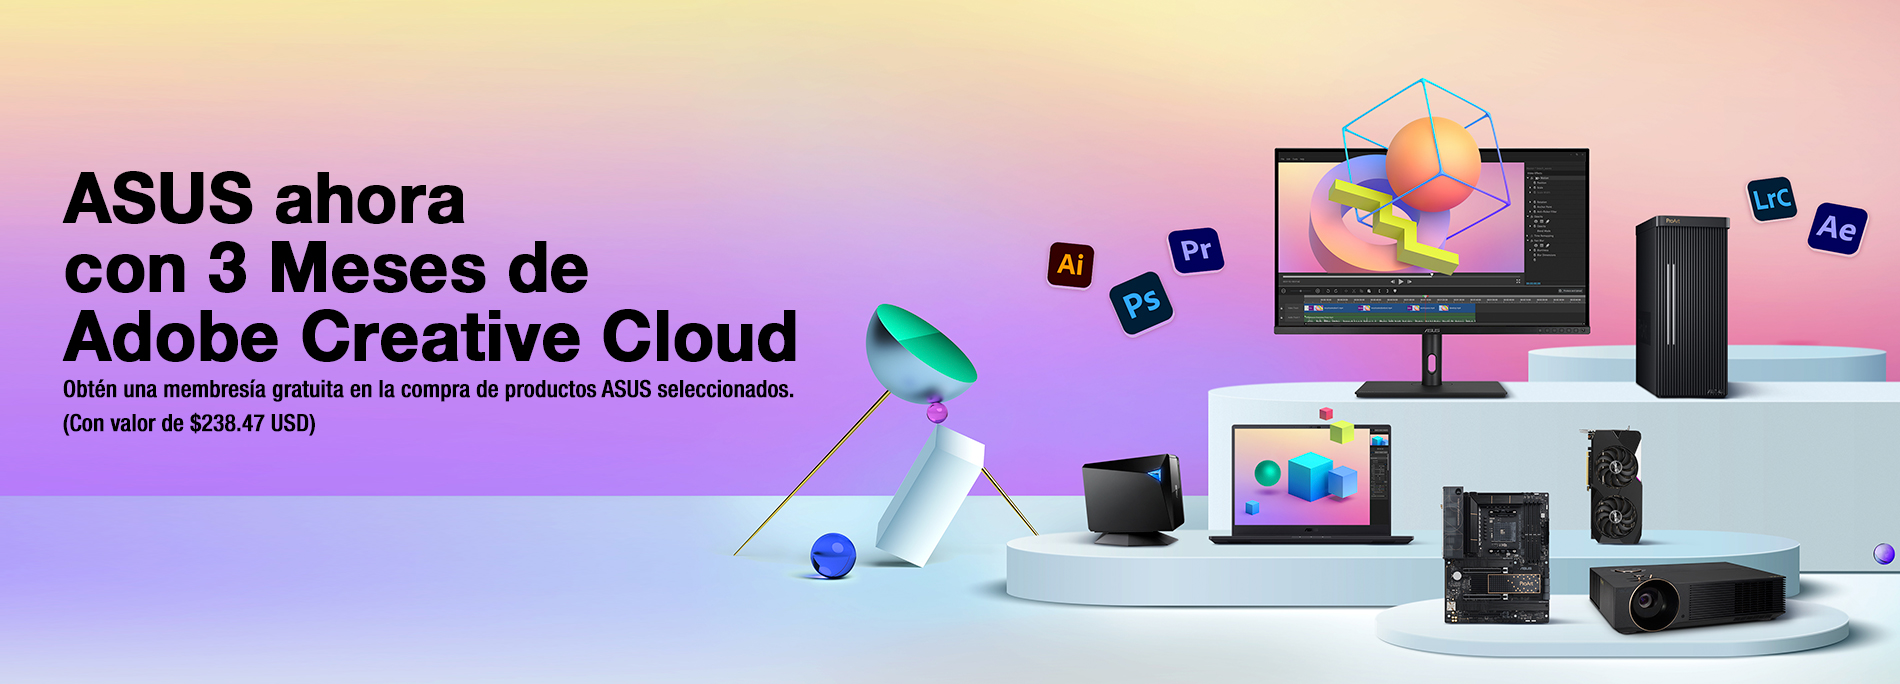 ASUS ahora con 3 meses de Adobe Creative Cloud (Valor de $238.47 USD)